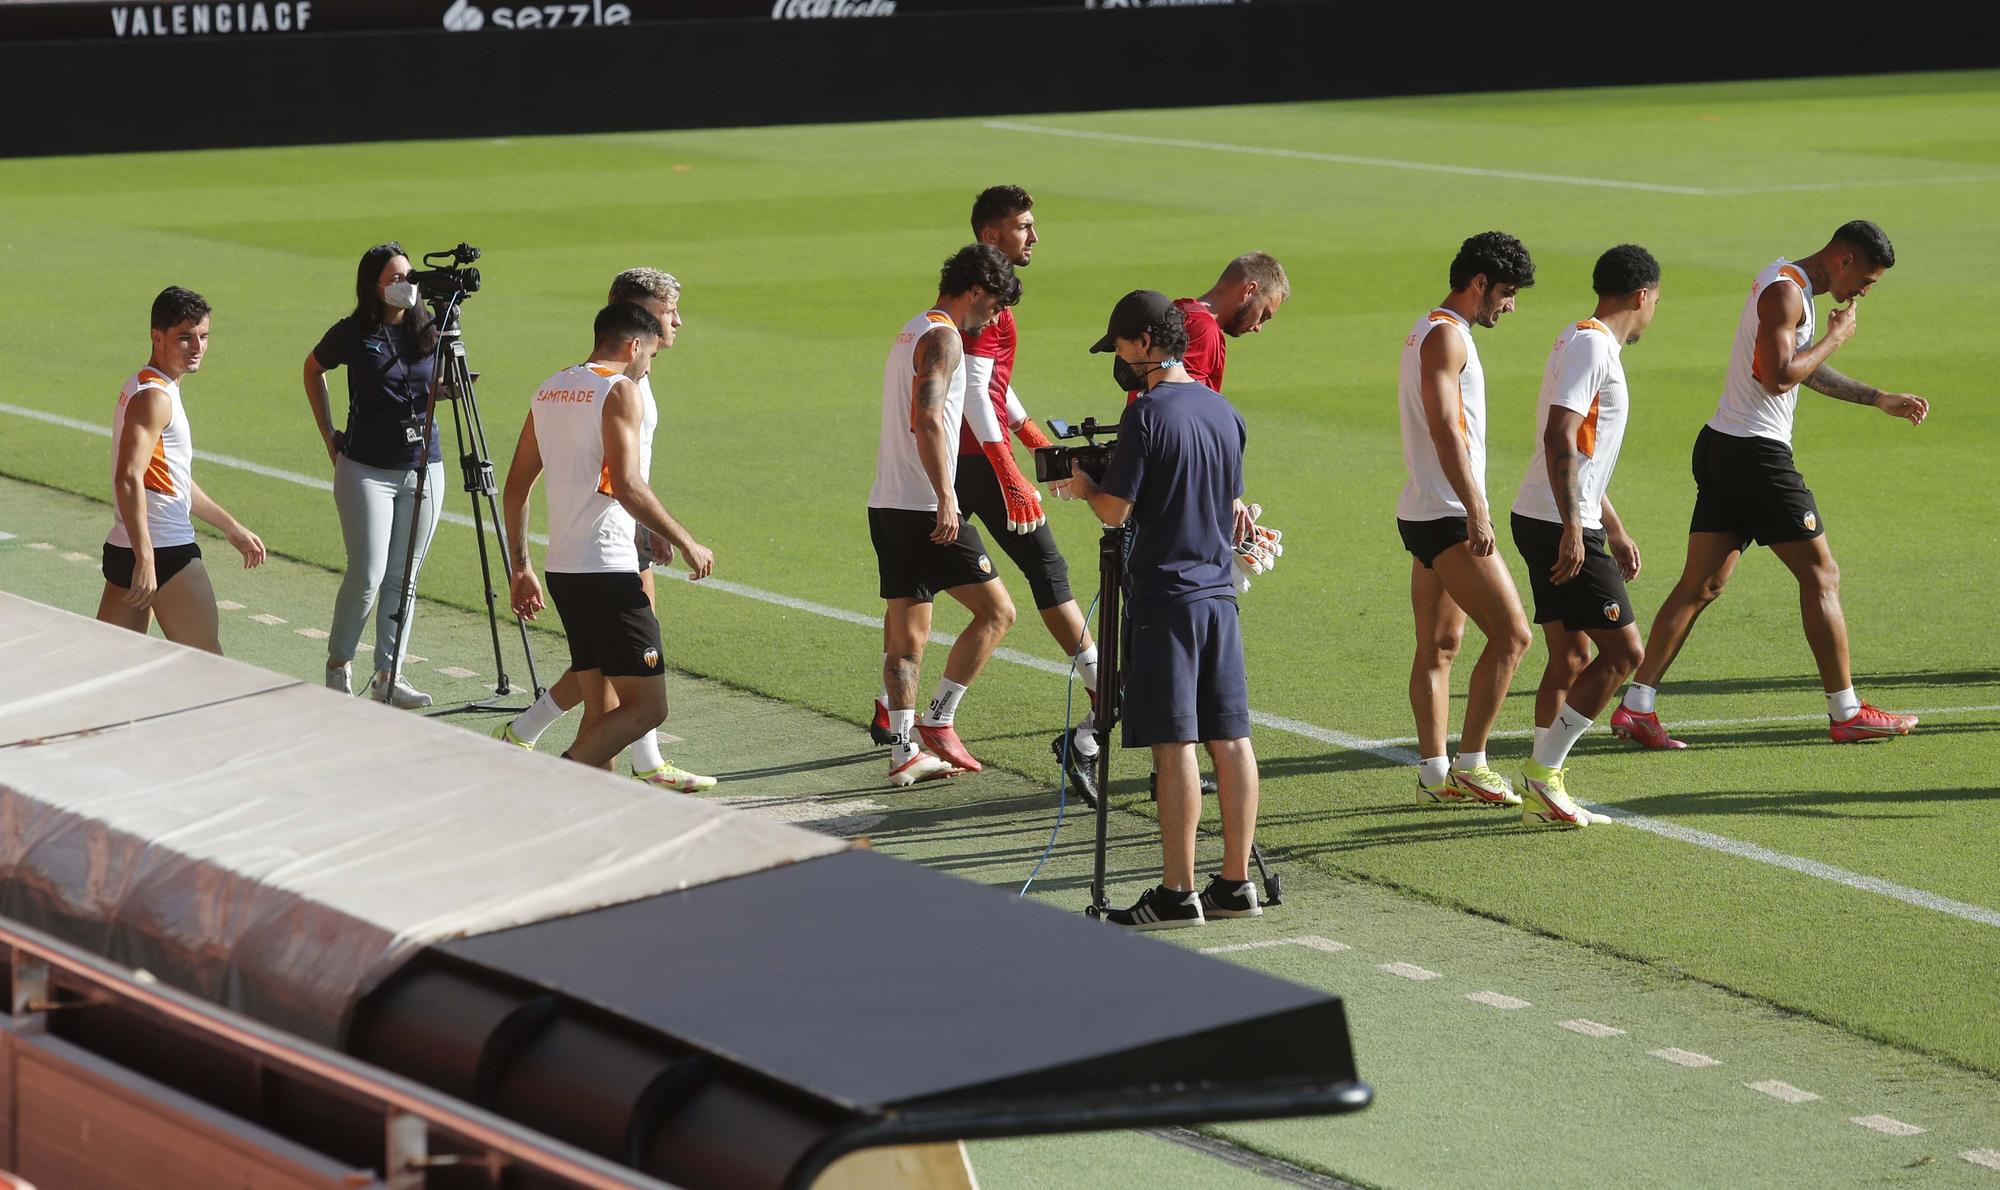 El Valencia CF prepara el partido frente al Real Madrid en Mestalla